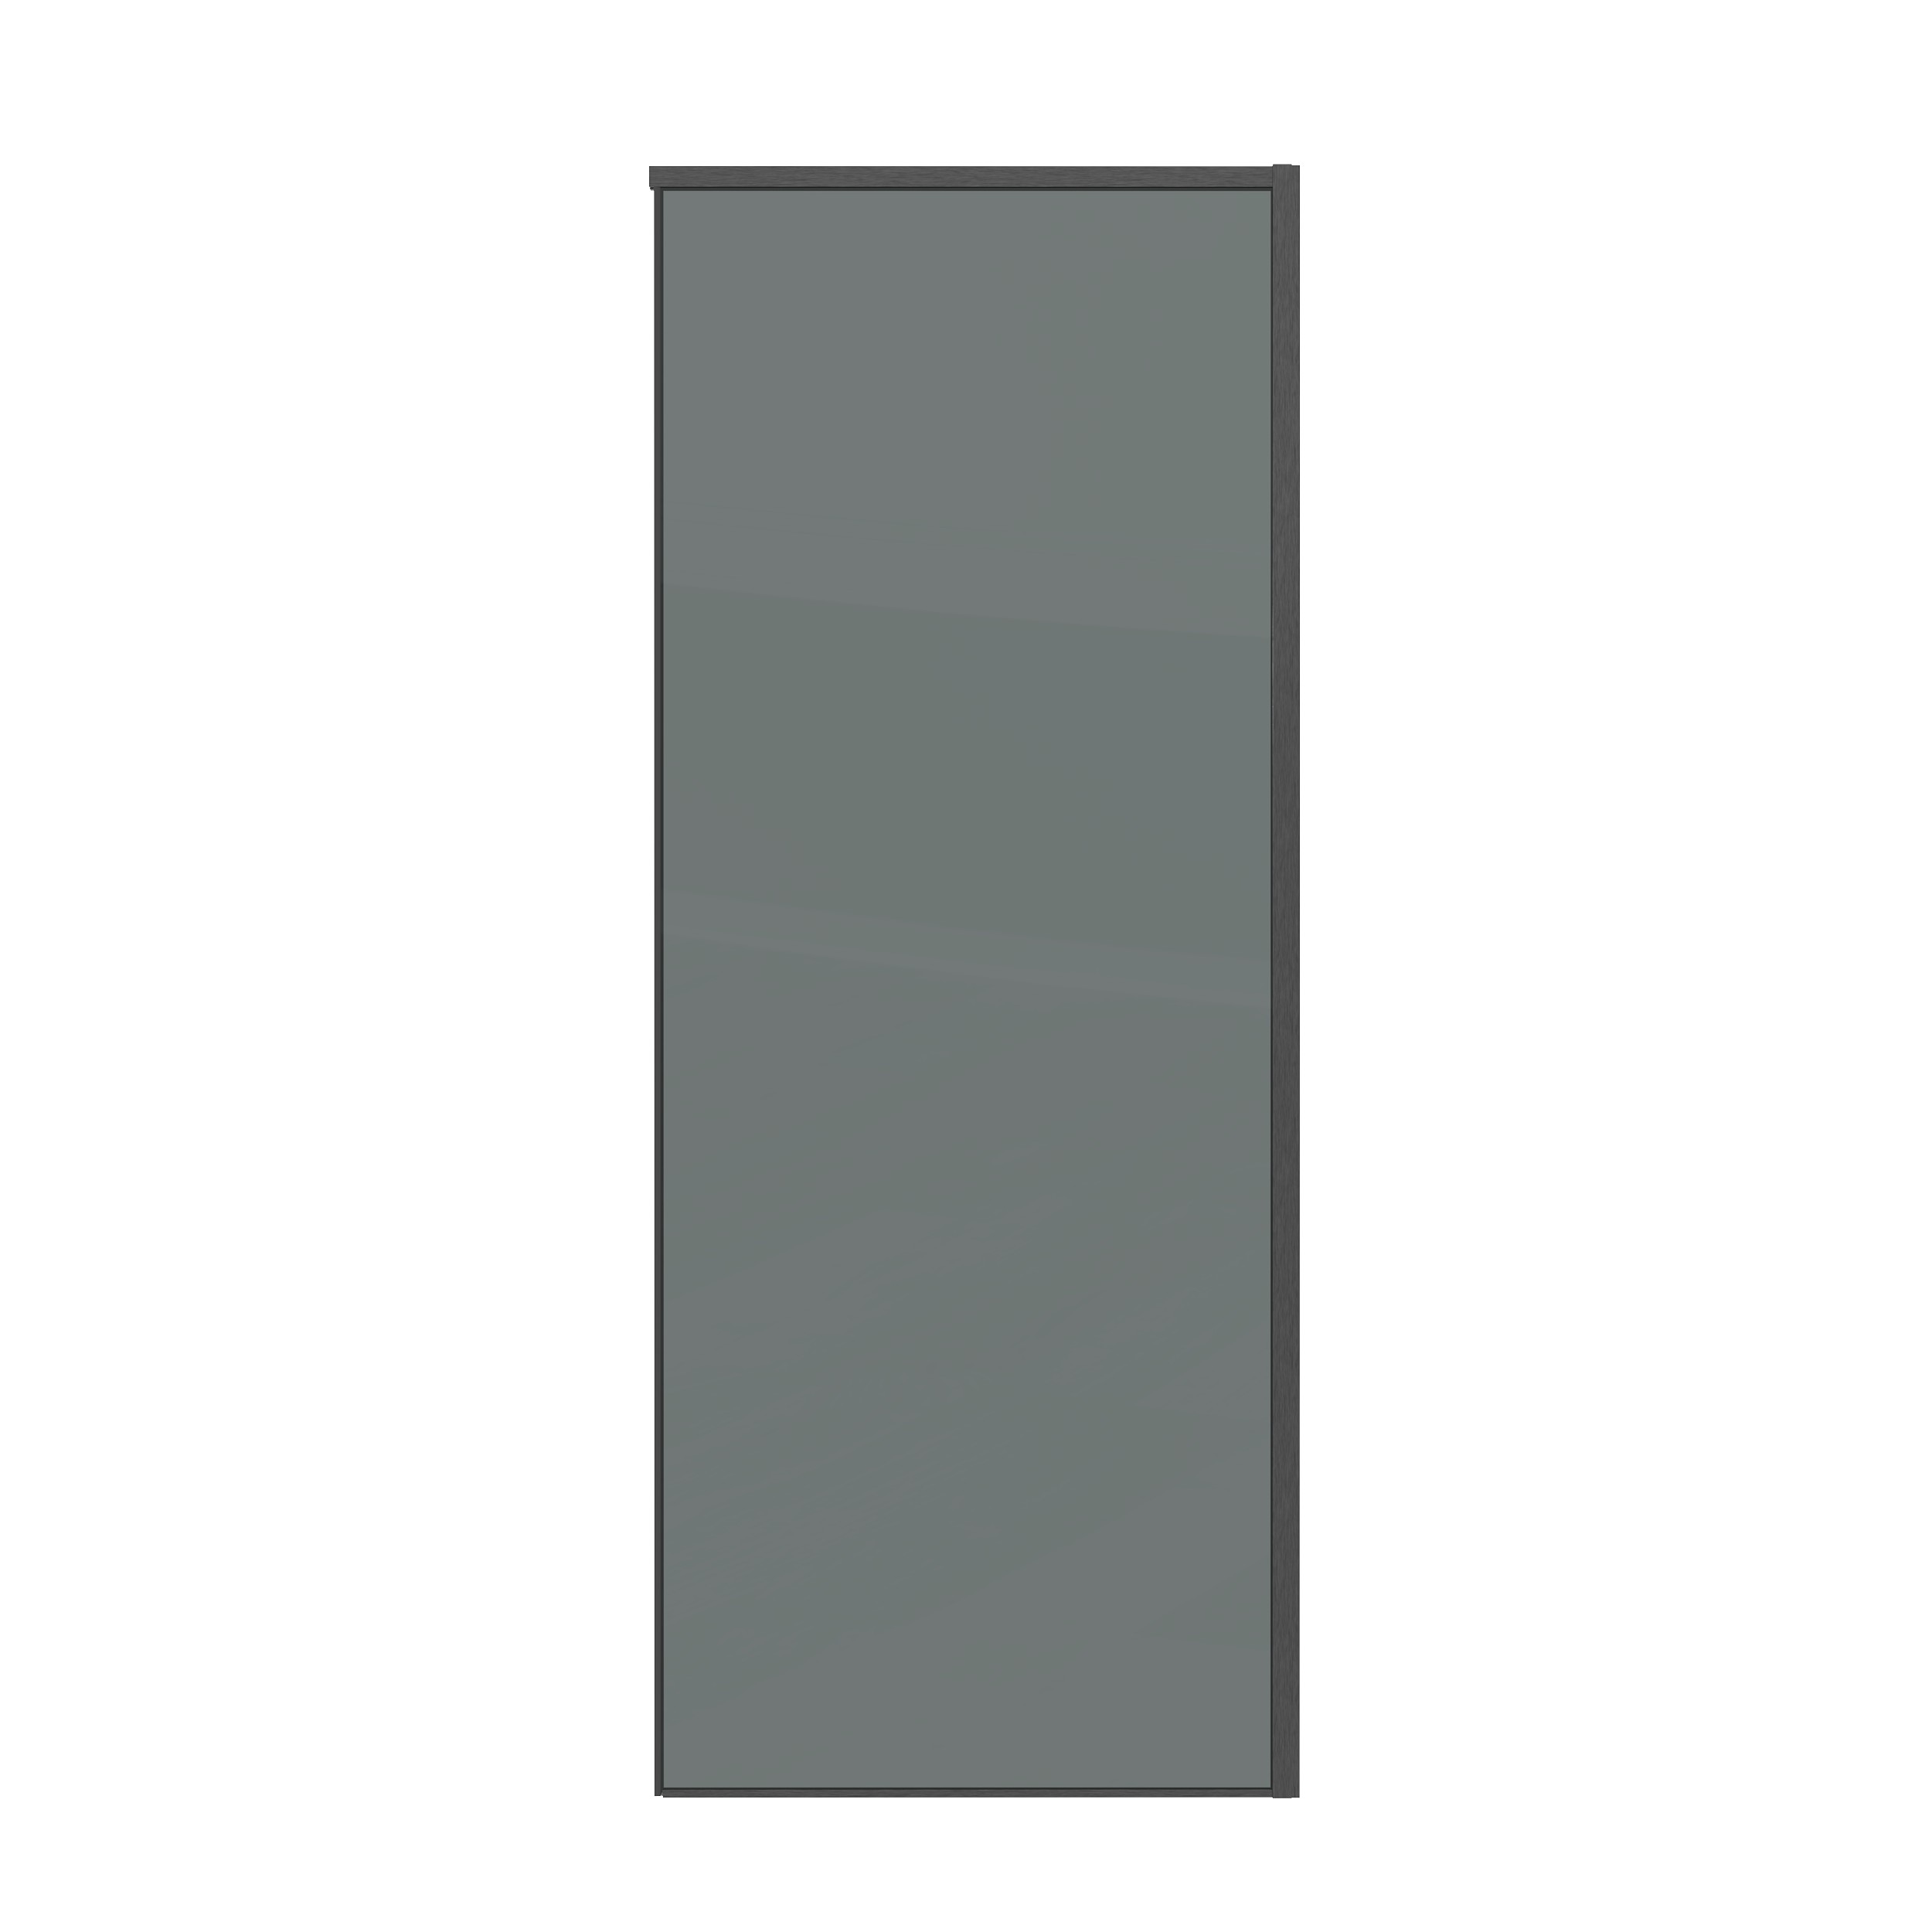 Боковая стенка Grossman Galaxy 70x195 200.K33.01.70.42.10 стекло тонированное, профиль графит